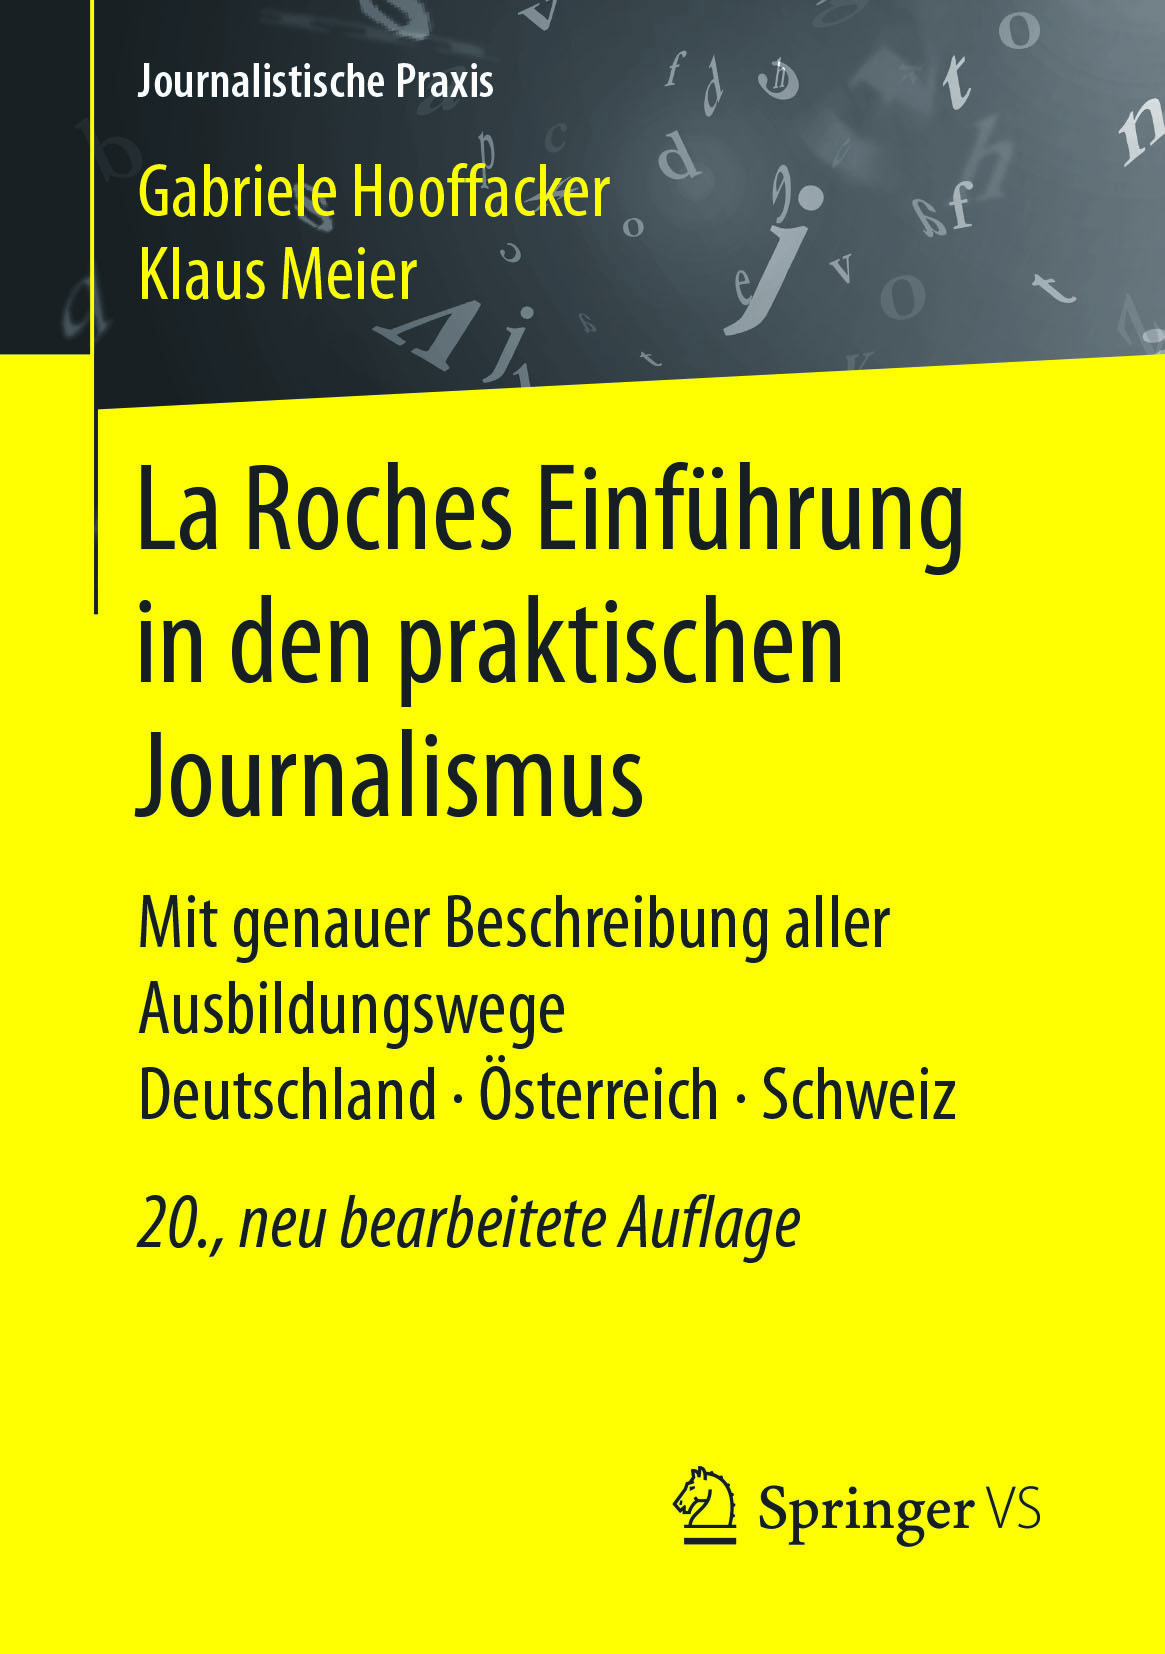 Hooffacker, Gabriele - La Roches Einführung in den praktischen Journalismus, ebook